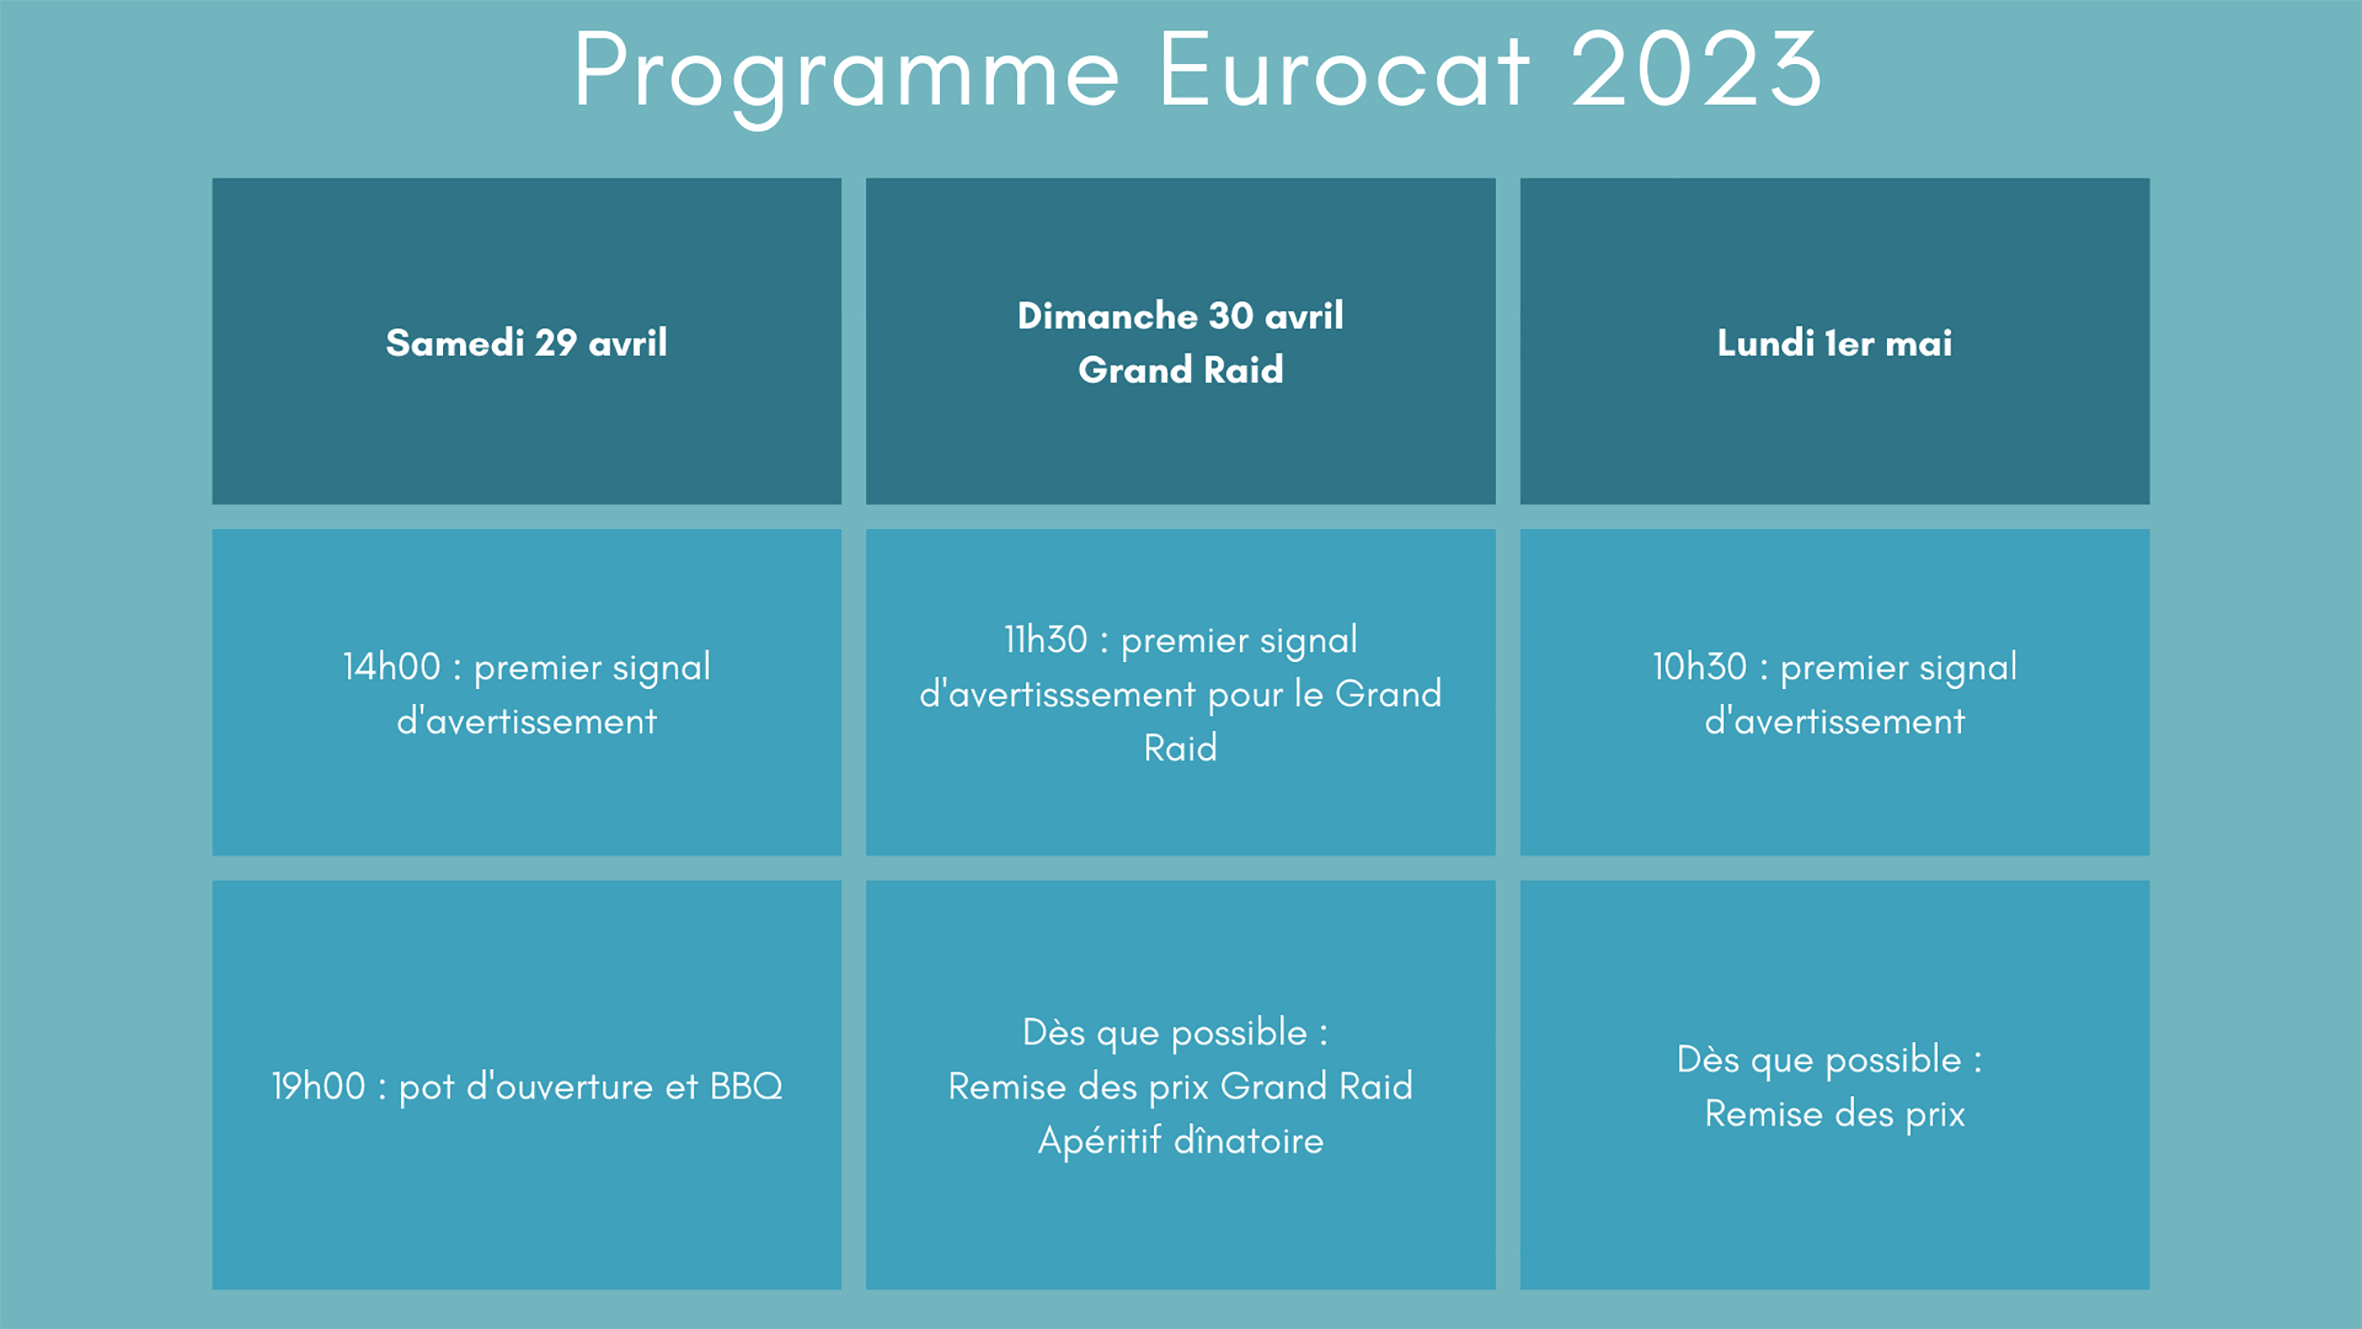 Programme Eurocat 2023